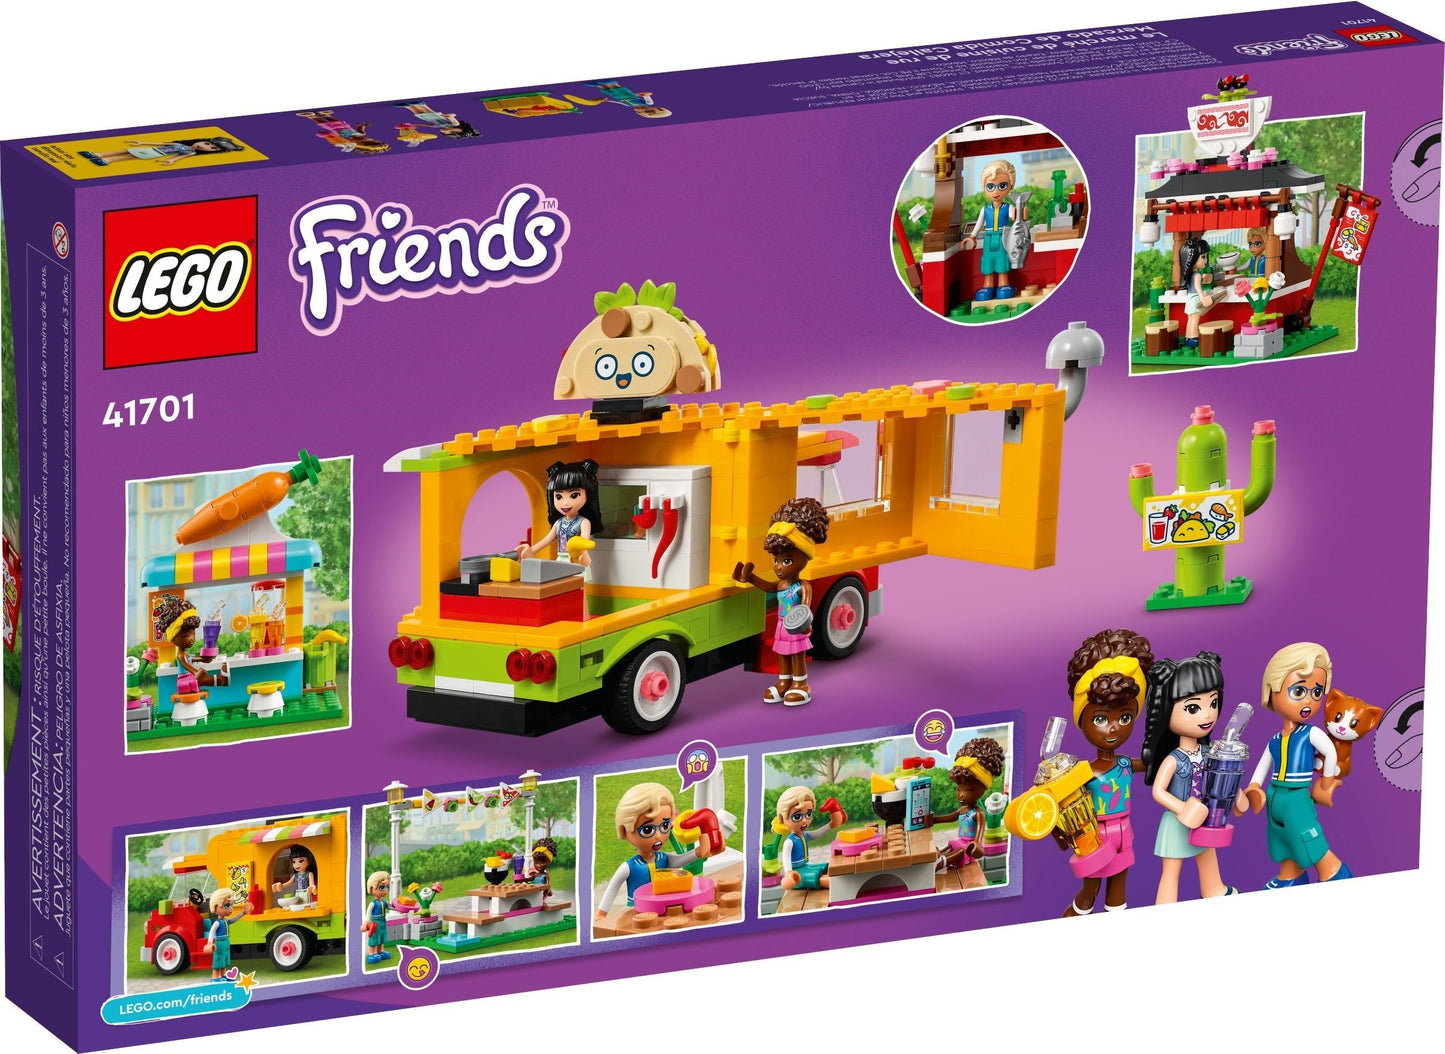 LEGO Friends Piata cu mancare stradala